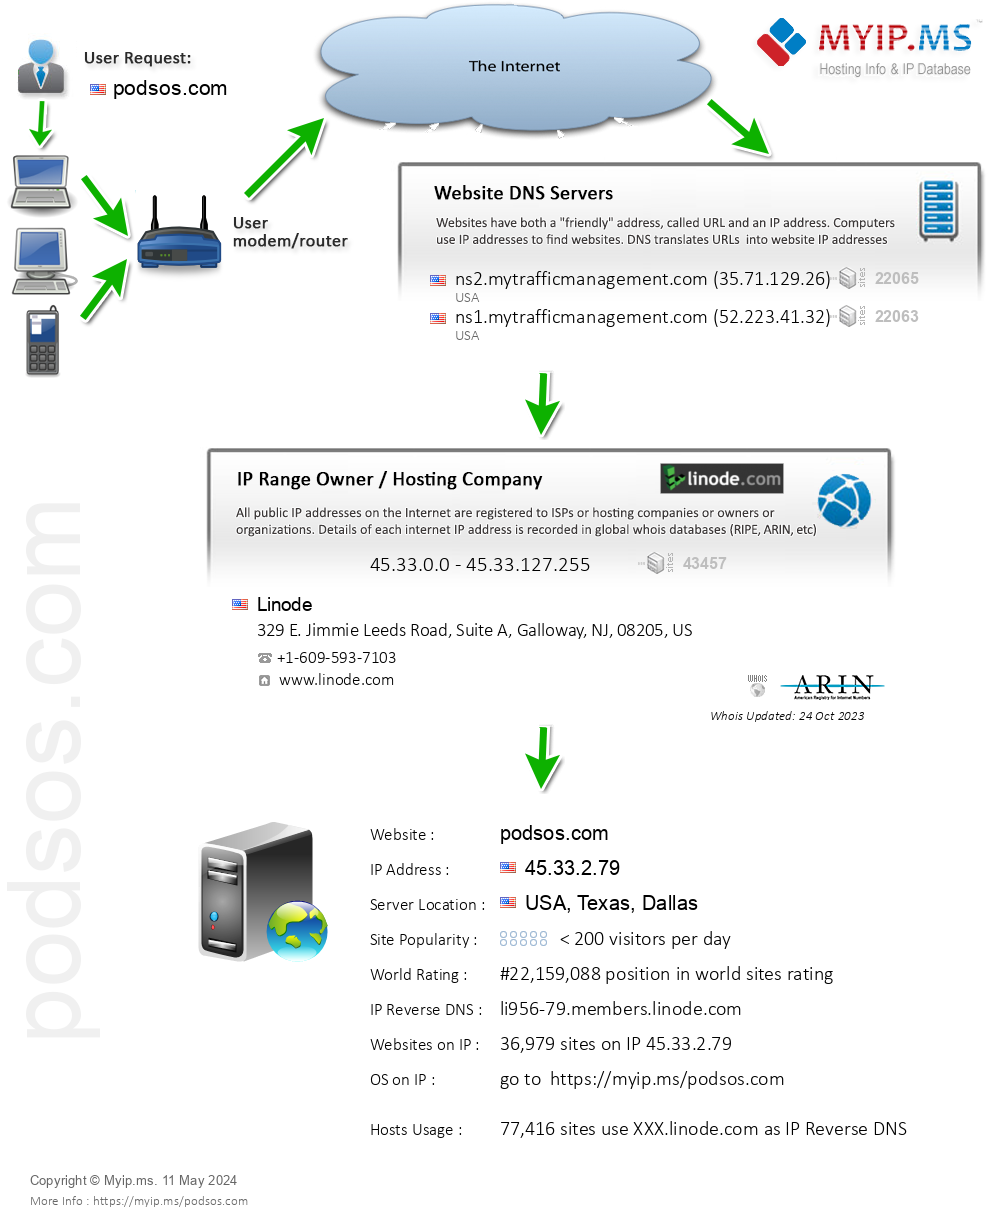 Podsos.com - Website Hosting Visual IP Diagram